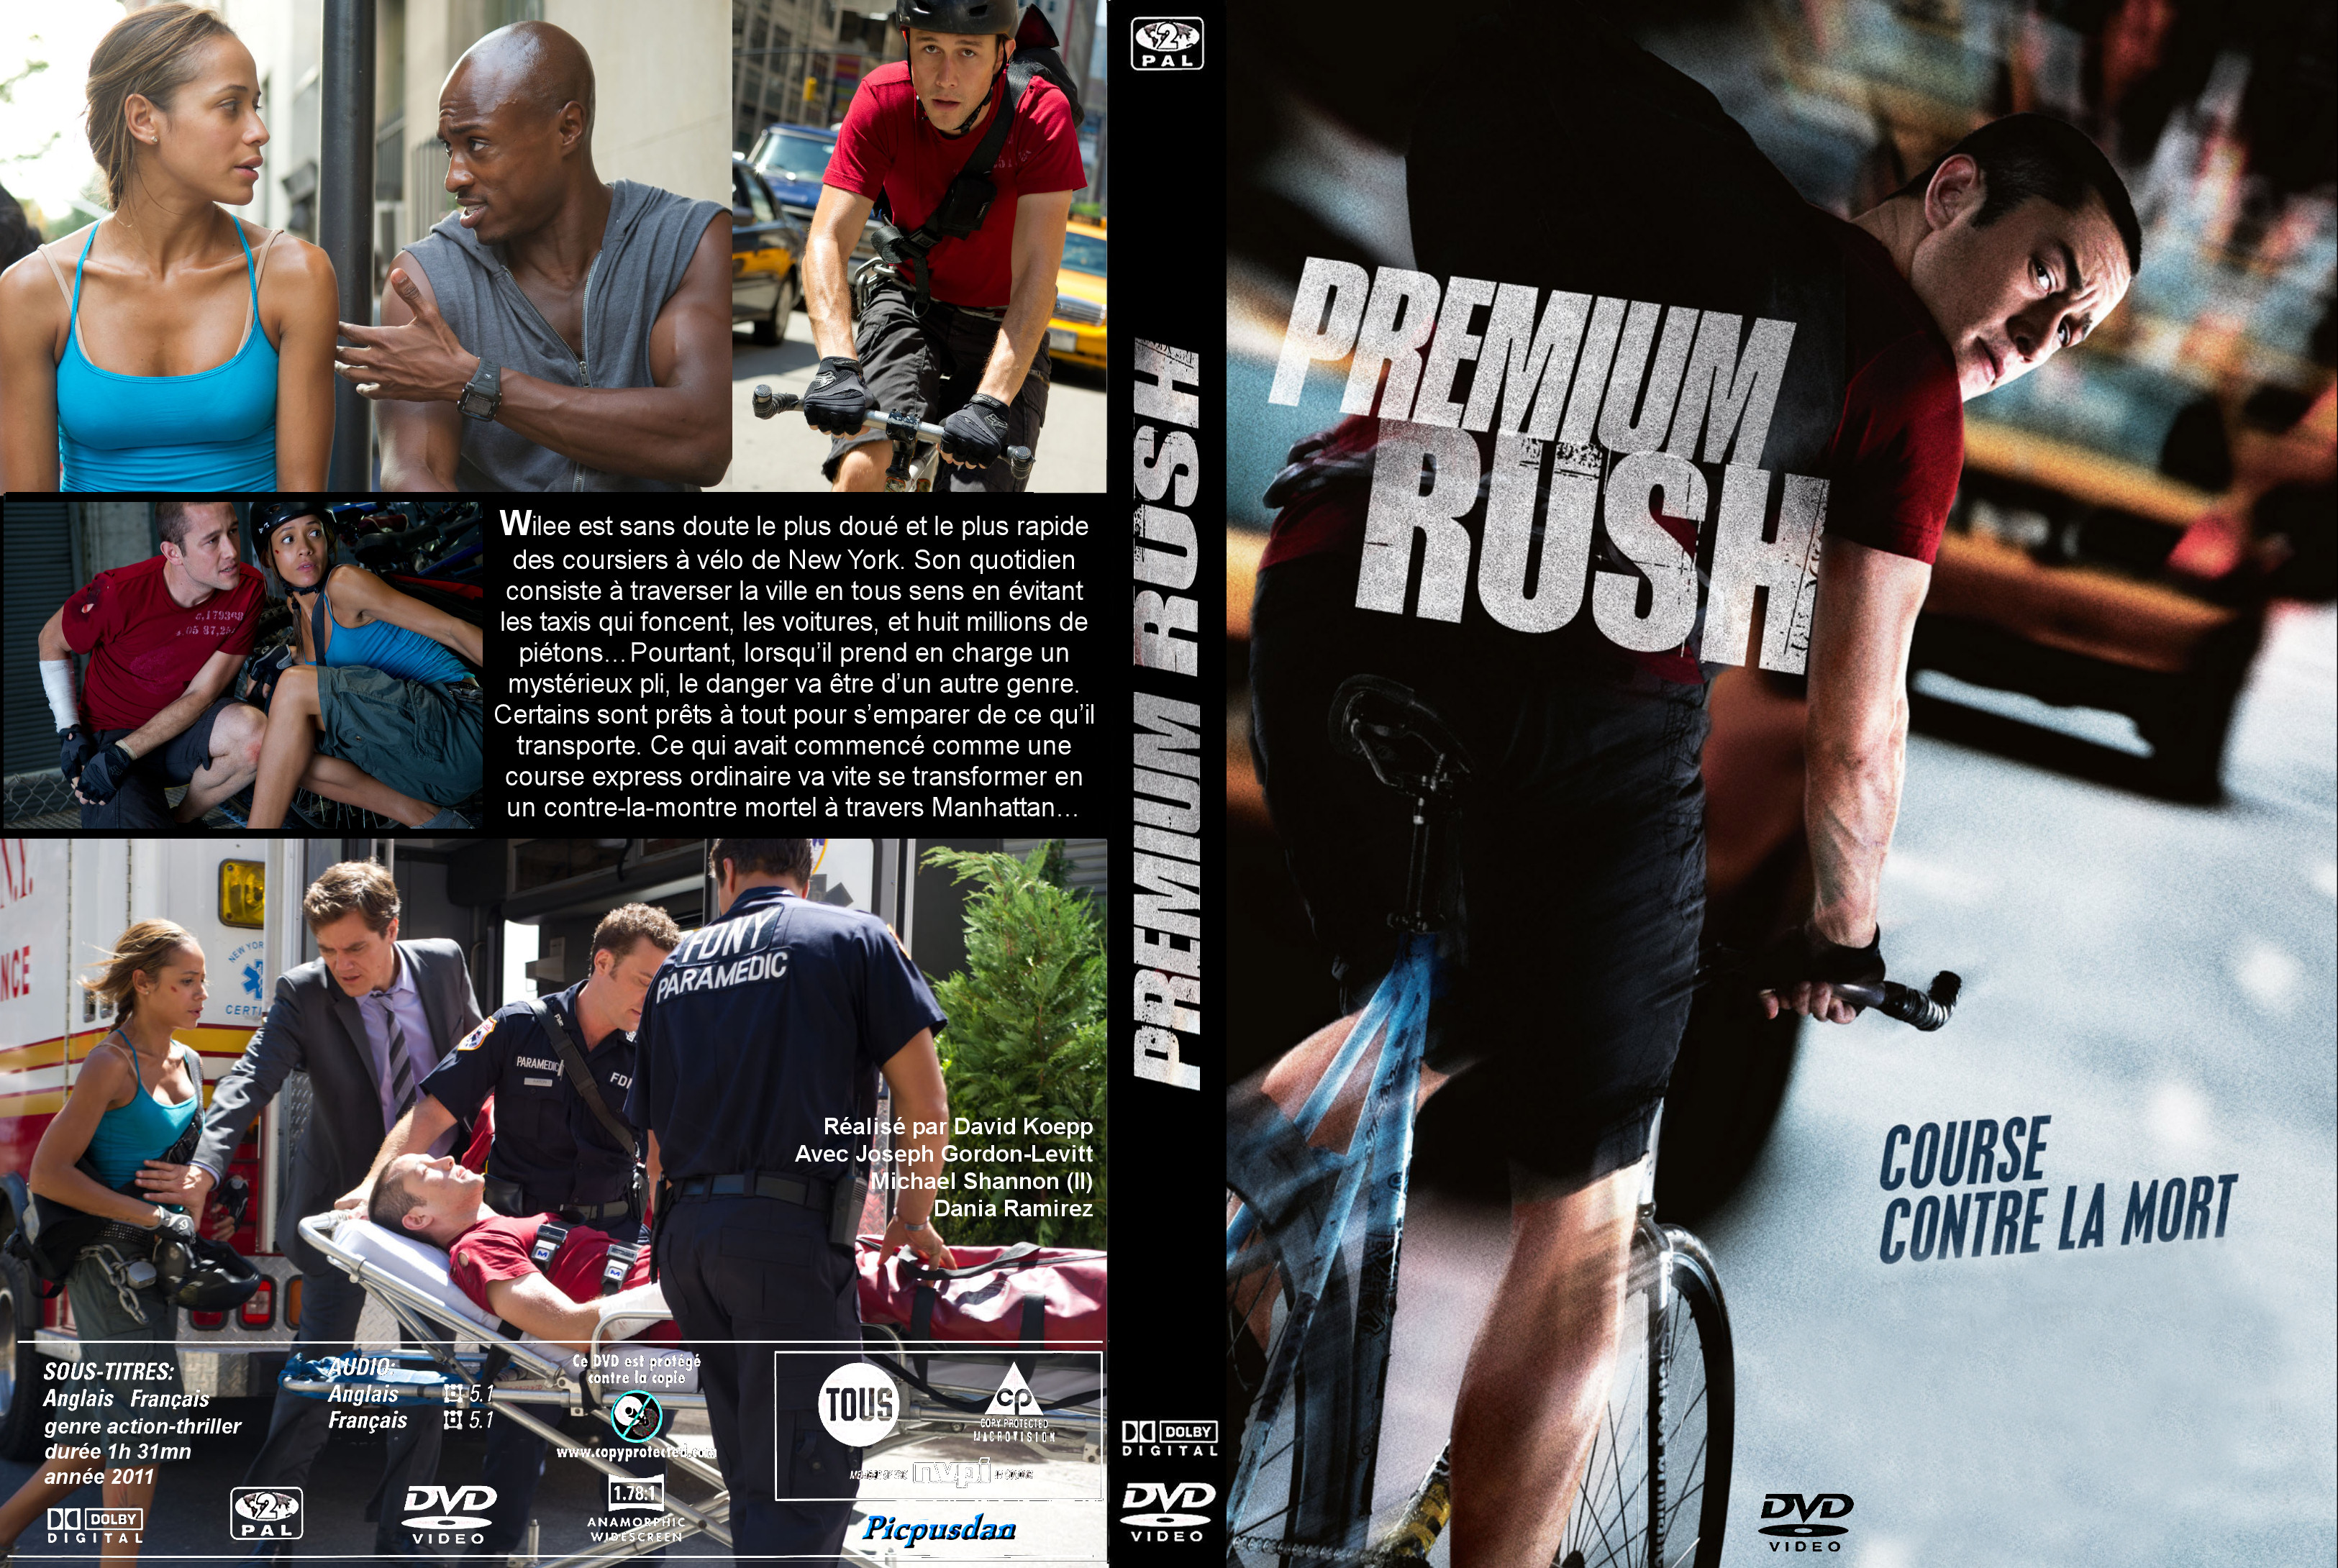 Jaquette DVD Premium Rush custom